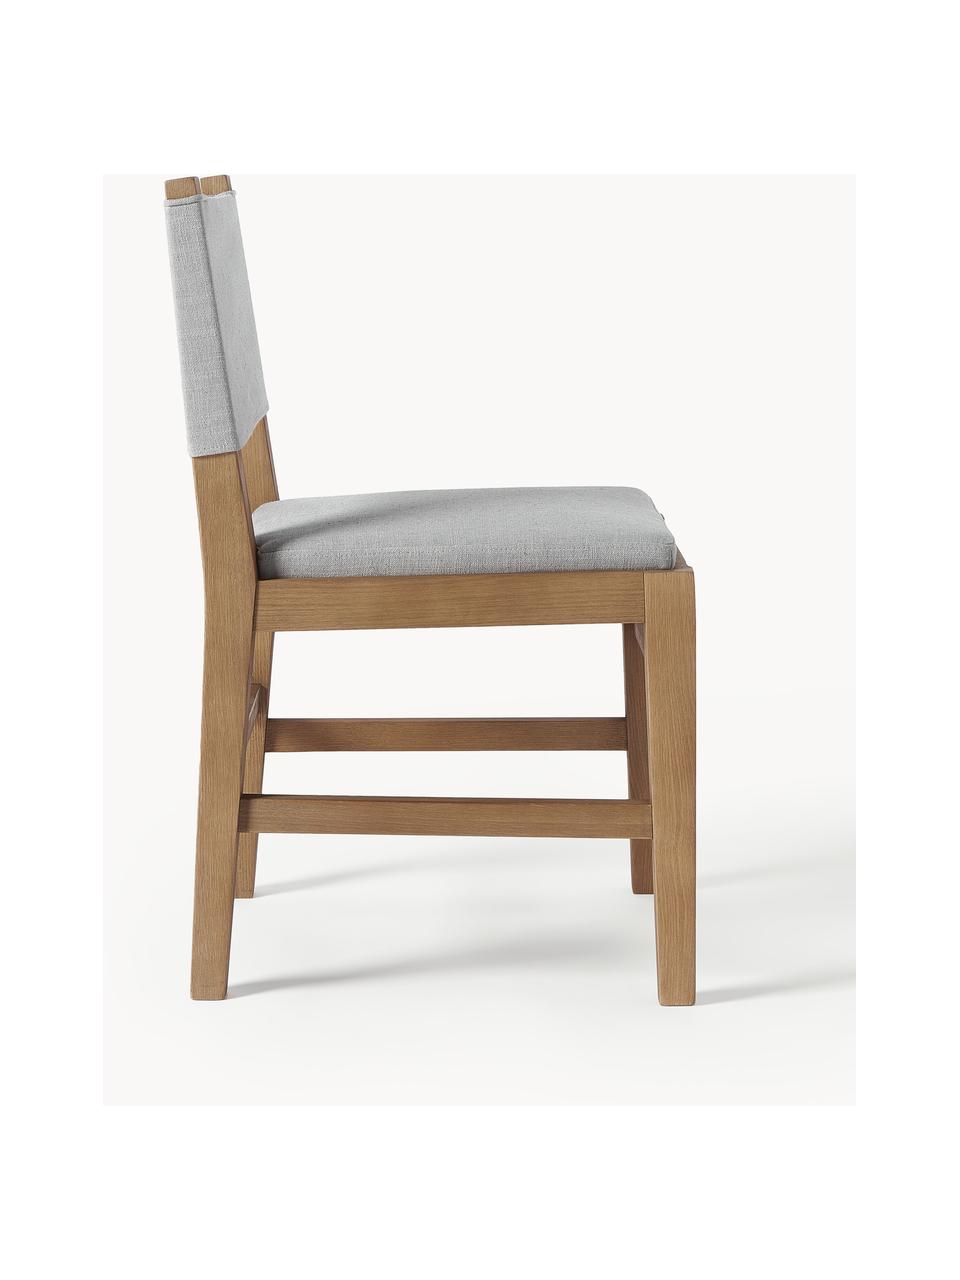 Tapicerowane krzesło z drewna Liano, Stelaż: drewno dębowe, Tapicerka: 54% poliester, 36% wiskoz, Szara tkanina, drewno dębowe, S 50 x W 80 cm